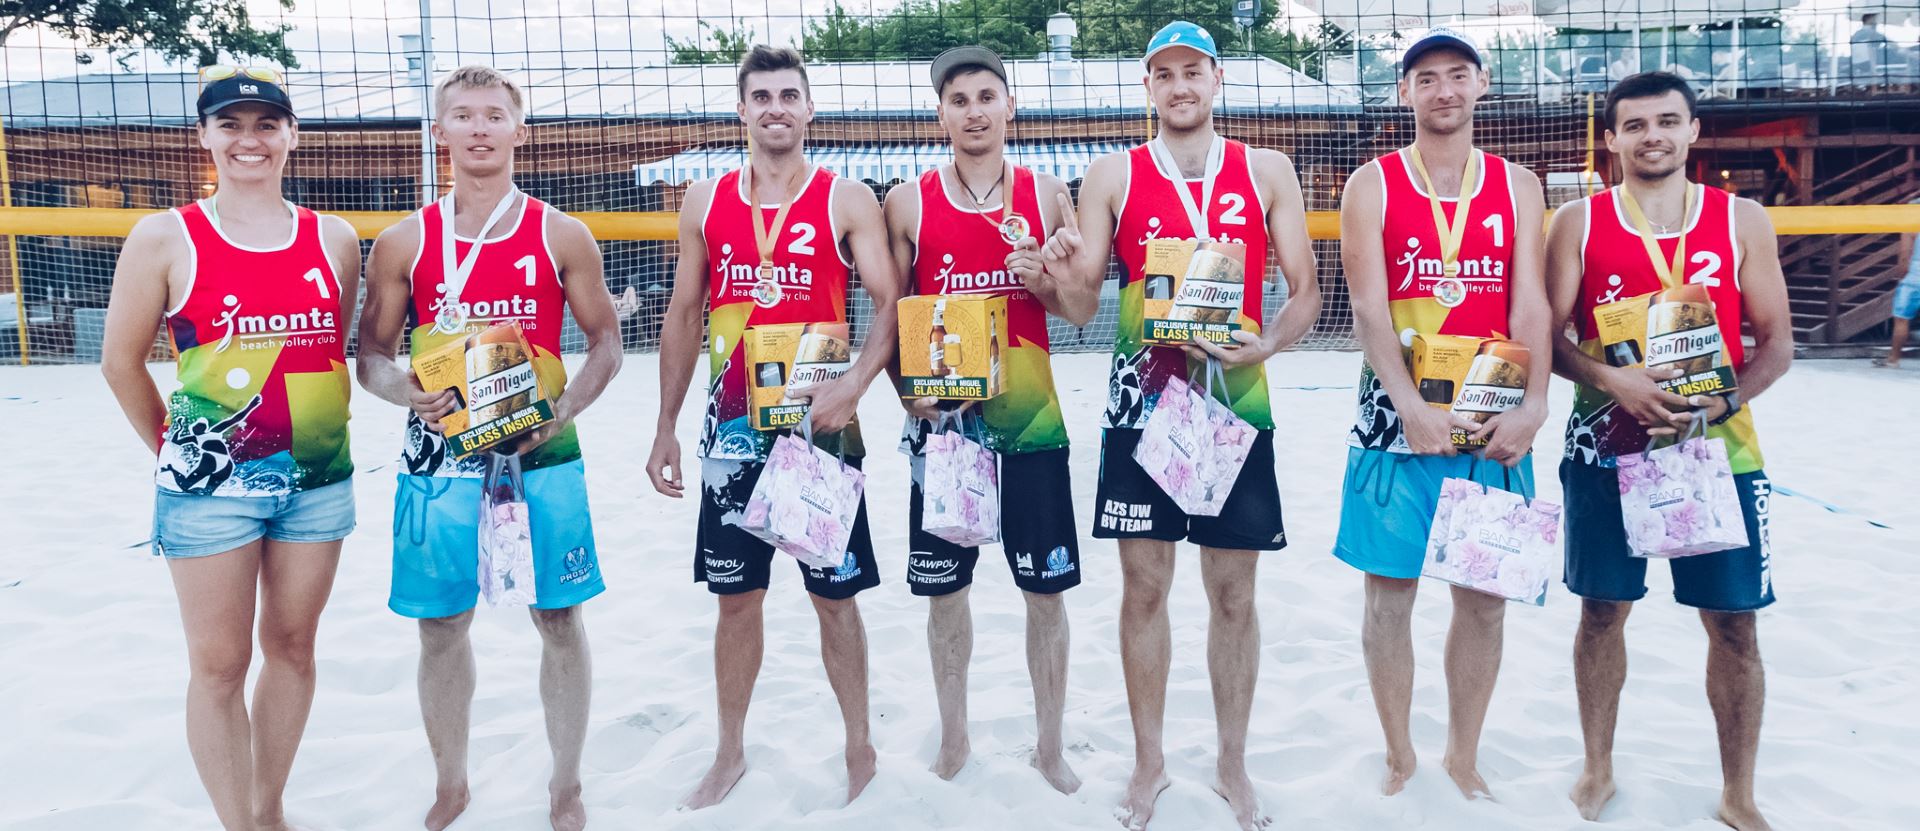 Kinga Pakuła/Dominika Balcerowicz oraz Bartek Lewicki/Tomasz Maziarek na podium II turnieju ICE-WATCH Beach Volleyball Cup